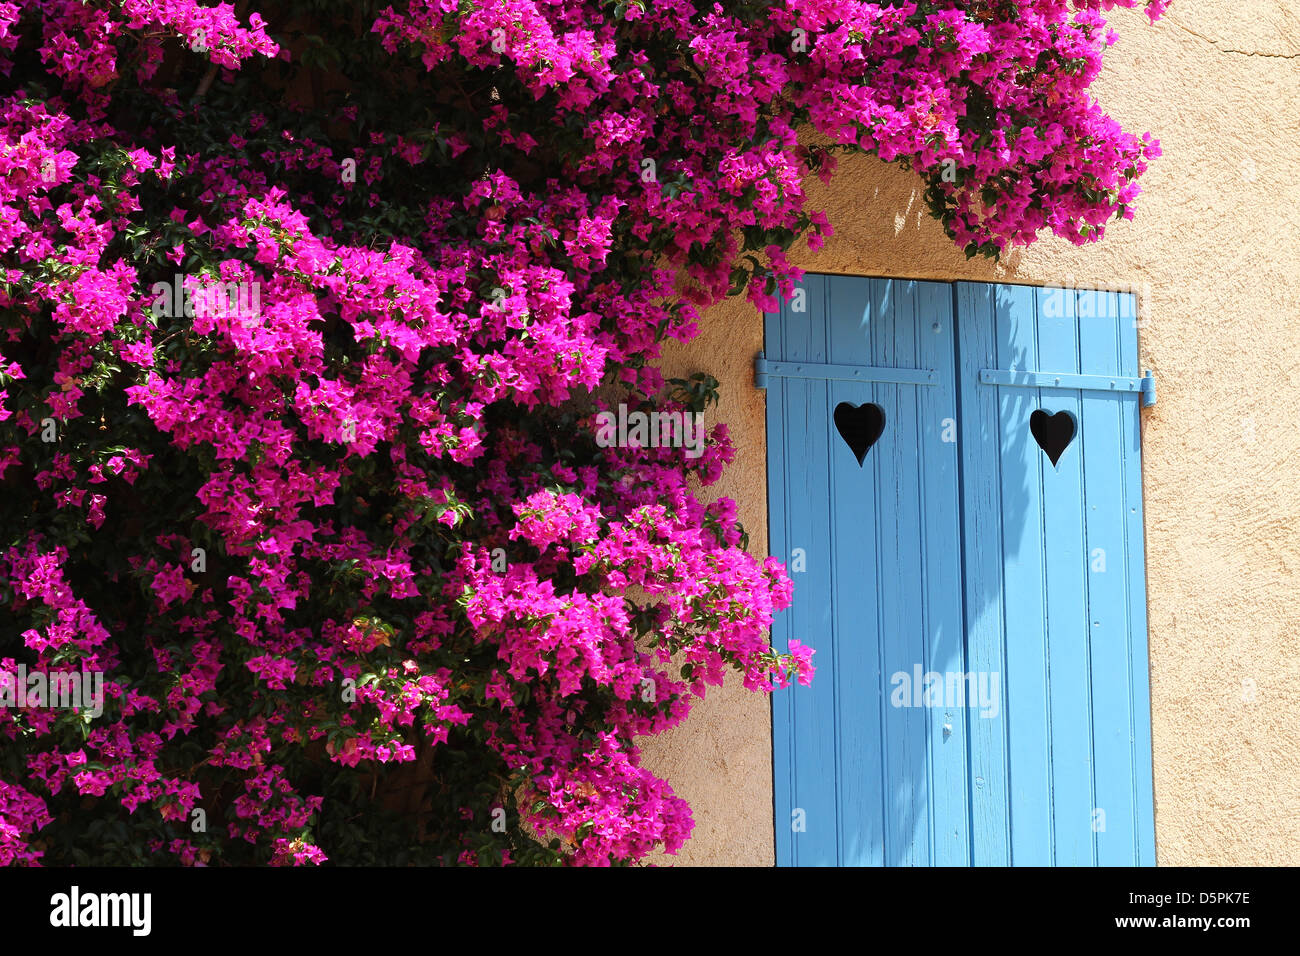 Soleggiata giornata estiva a Porquerolles, Riviera francese. Il Bougainvillea boccola attorno alla finestra con persiane blu con cuore-tagli sagomati Foto Stock